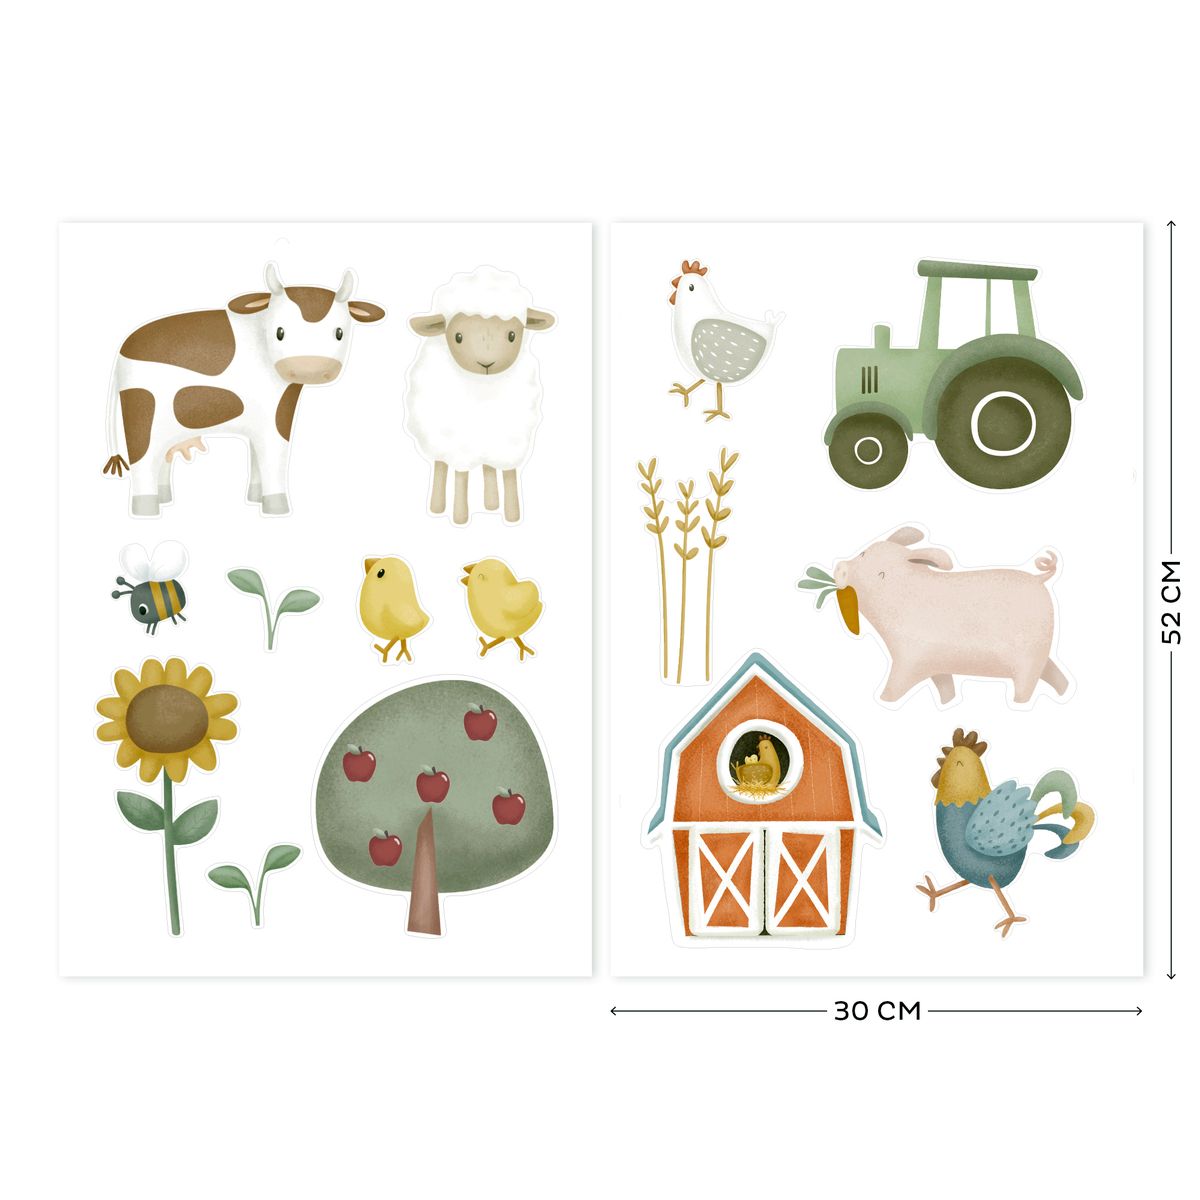 Sticker Boîte aux Lettres - Stickers Bébés & Enfants E-Glue - Deco